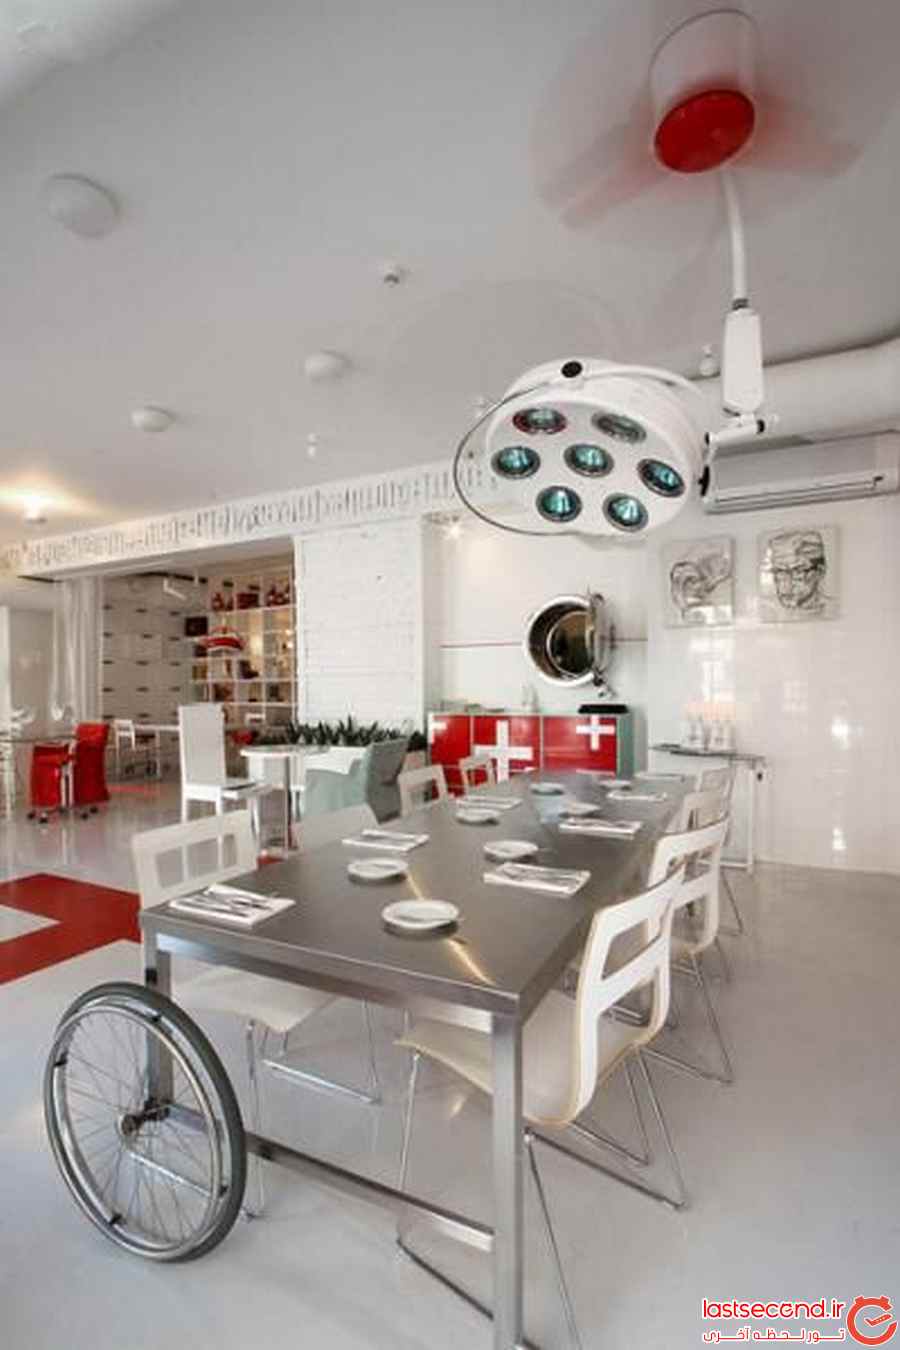  تصاویری جالب از  طراحی رستورانی شبیه به بیمارستان   